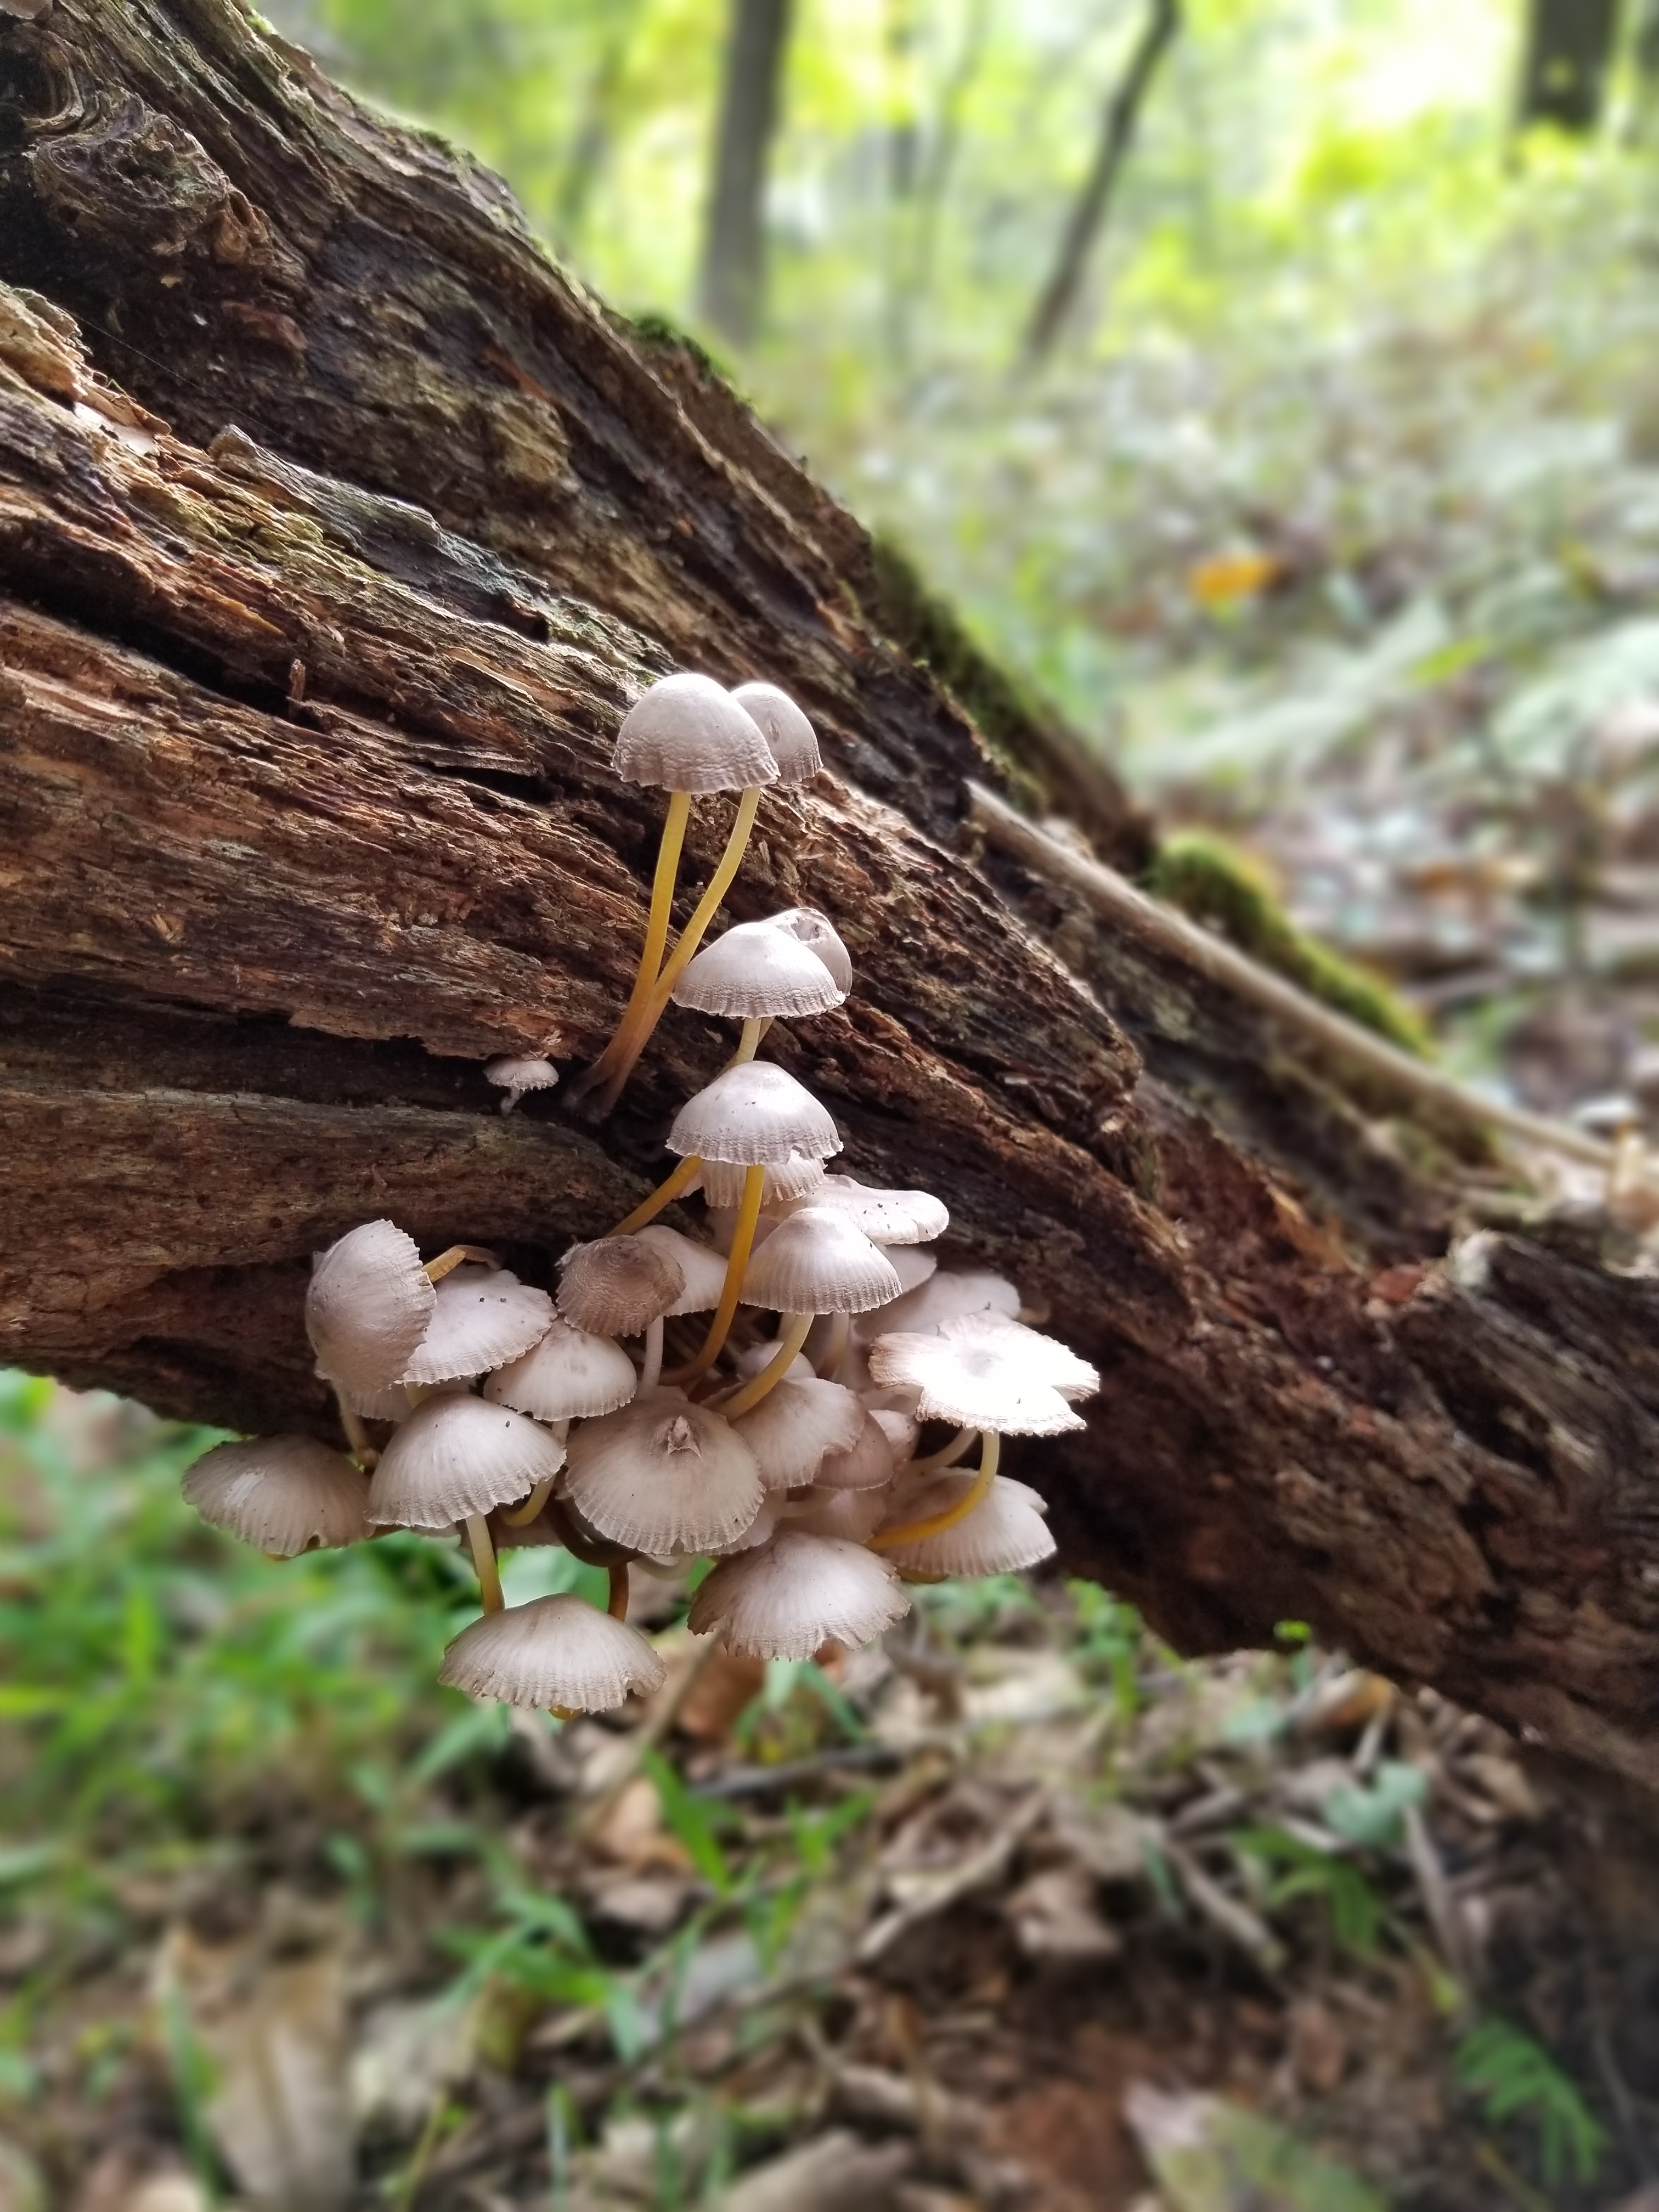 20181005 tiny tree mushrooms (2)